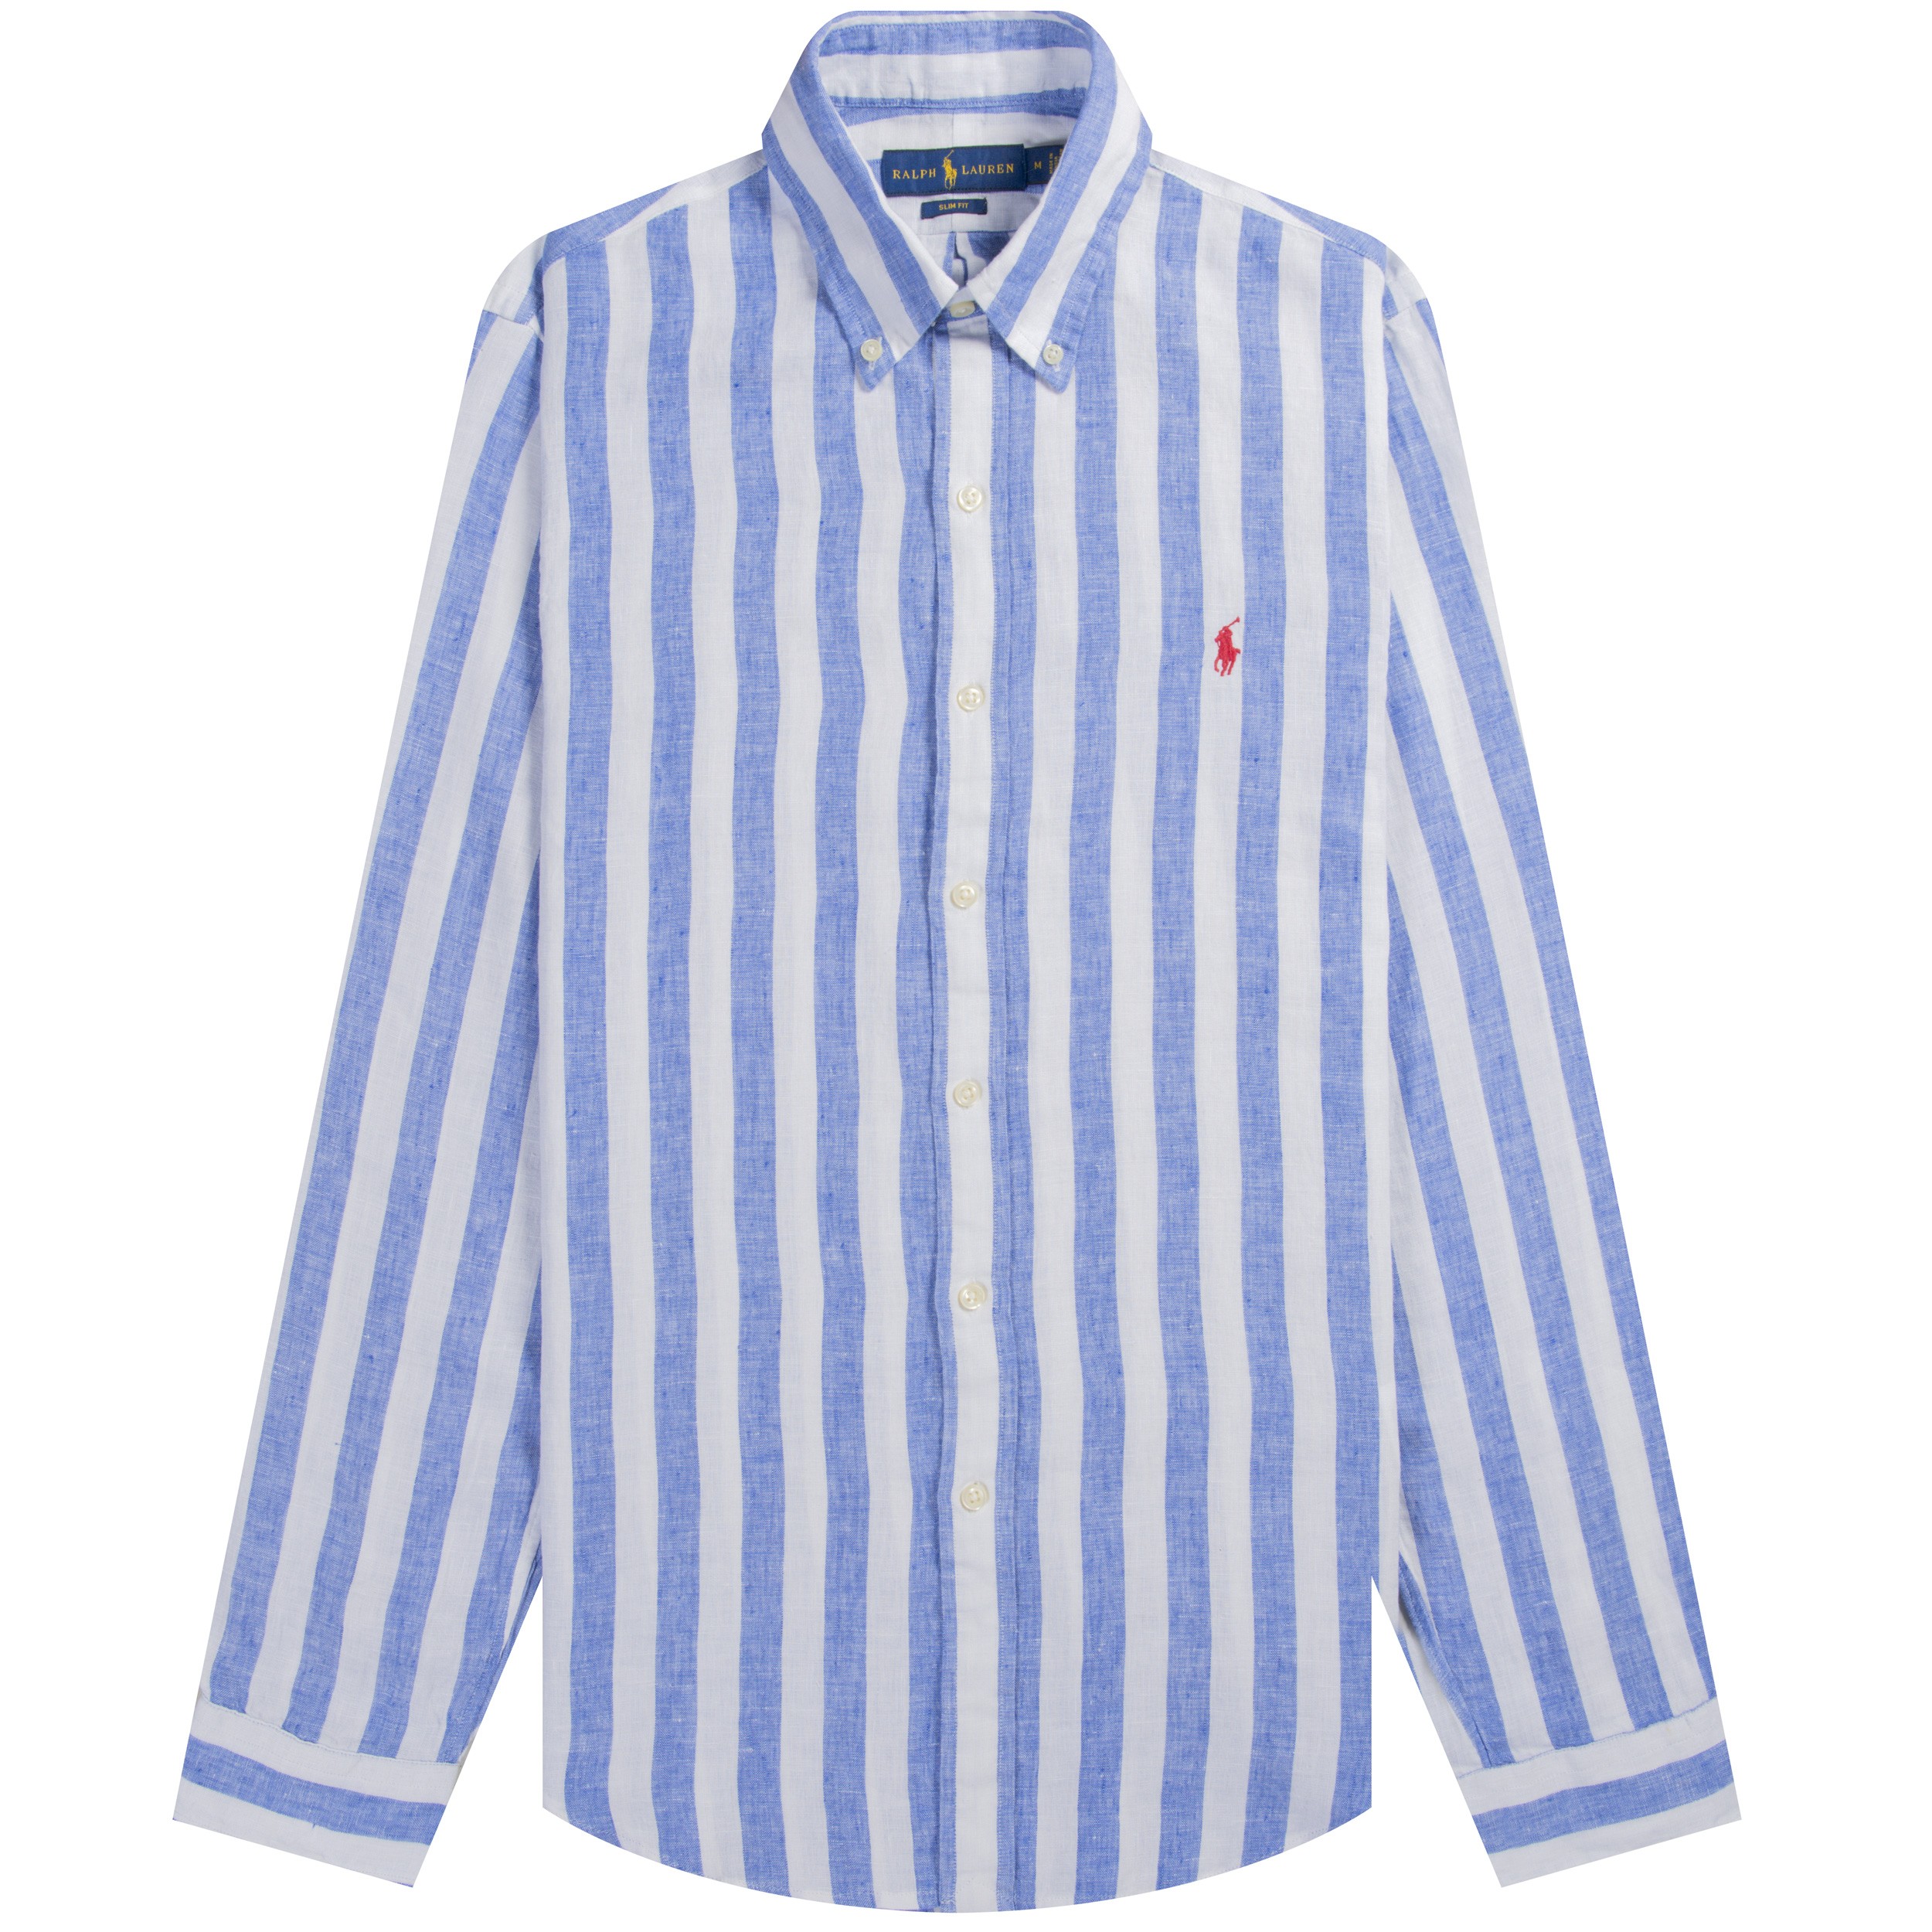 Polo Ralph Lauren Ralph Lauren Slim Fit Striped Linen Shirt Blue White